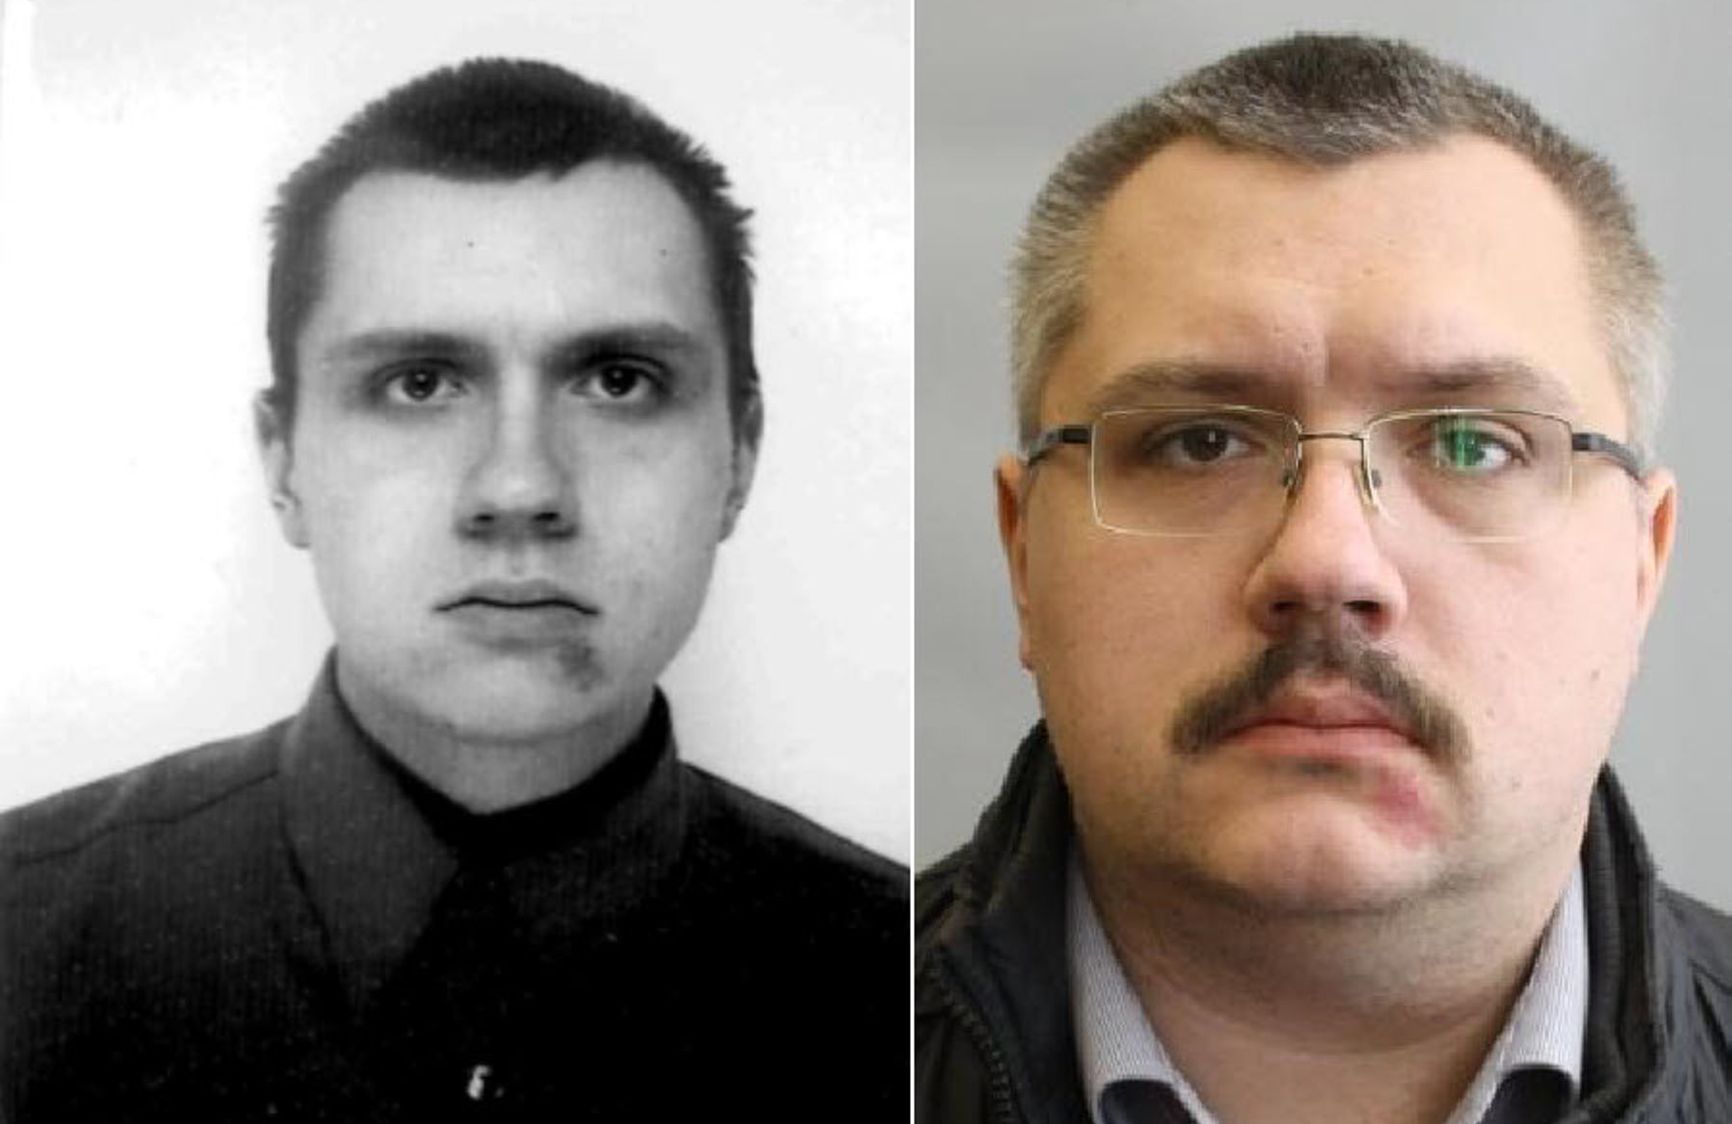 Alexei Alexandrov, aka "Frolov" - the person who applied Novichok to Navalny's underwear